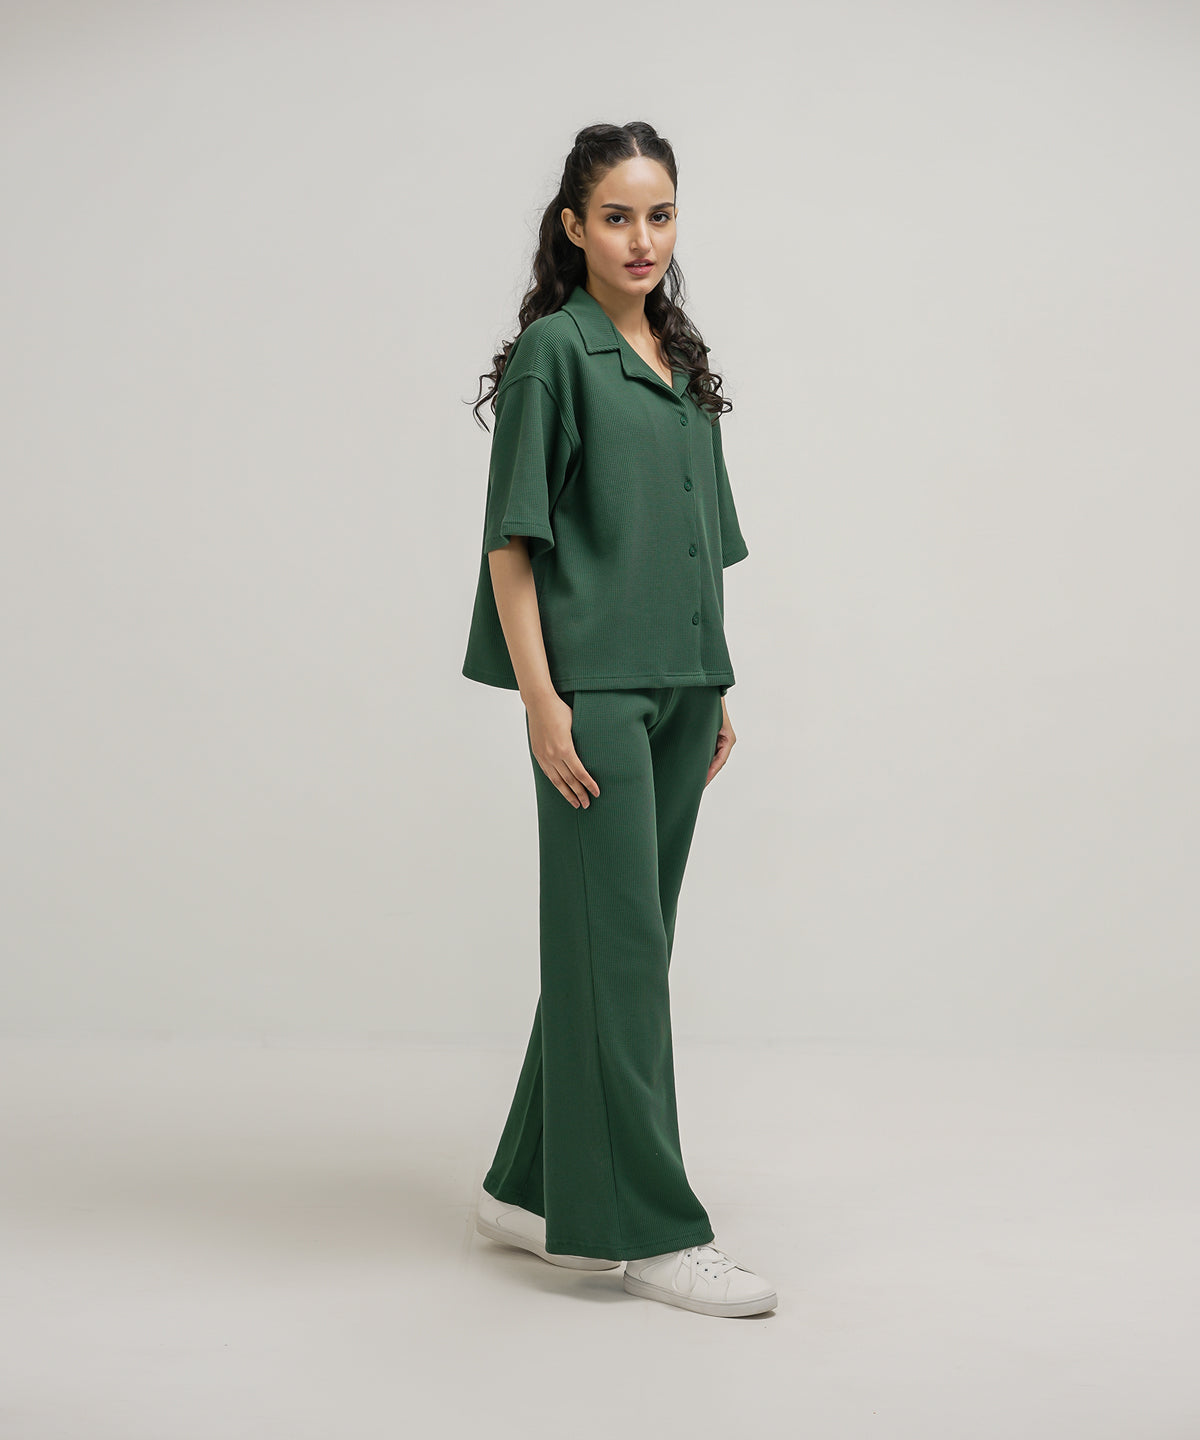 Bandana – Buy Women's Outfit Sets Online in Pakistan